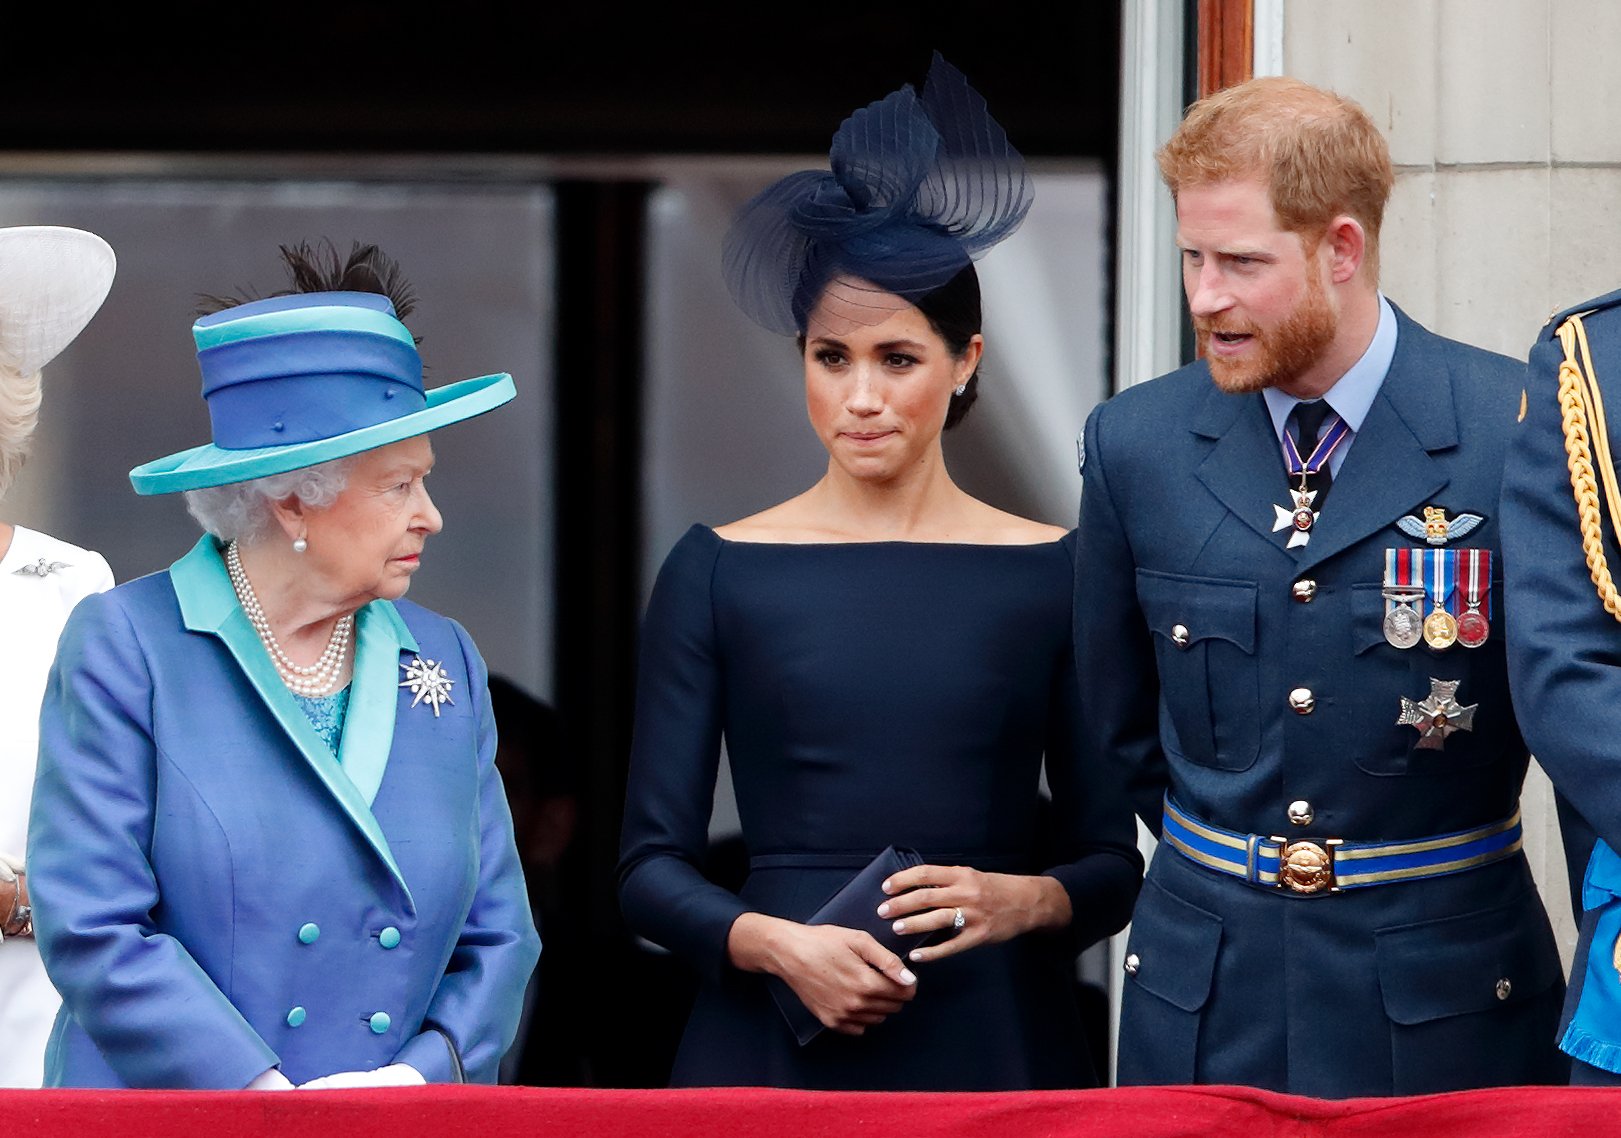 La reine Elizabeth II, la duchesse Meghan et le prince Harry lors du centenaire de la Royal Air Force, le 10 juillet 2018, à Londres, en Angleterre. | Source : Max Mumby/Indigo/Getty Images